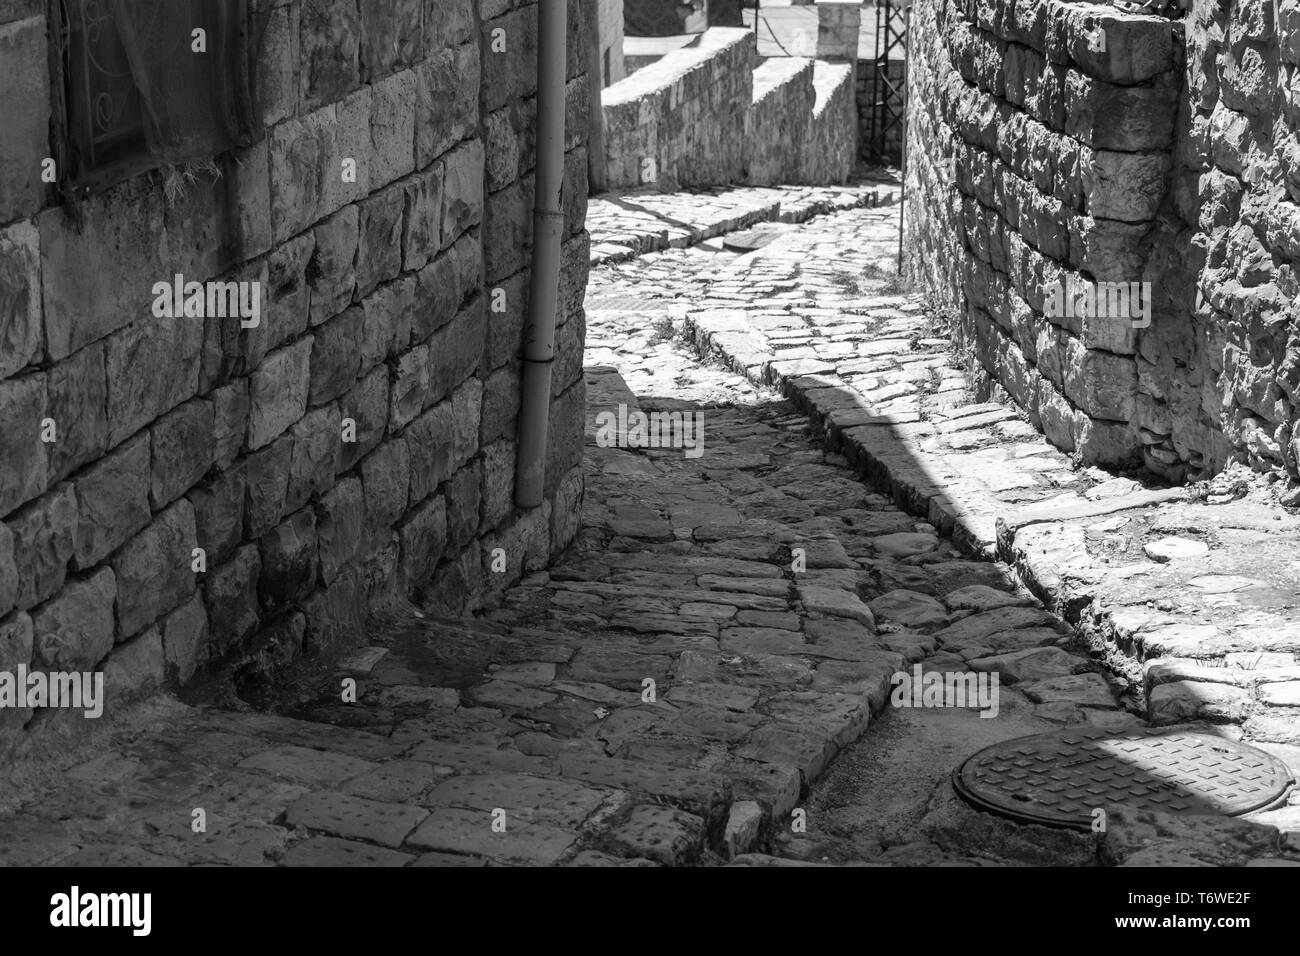 Questa è una cattura delle vecchie strade in Der el Kamar un villaggio situato in Libano e che potete vedere nella foto la vecchia a piedi fatta di pietre con un suo Foto Stock